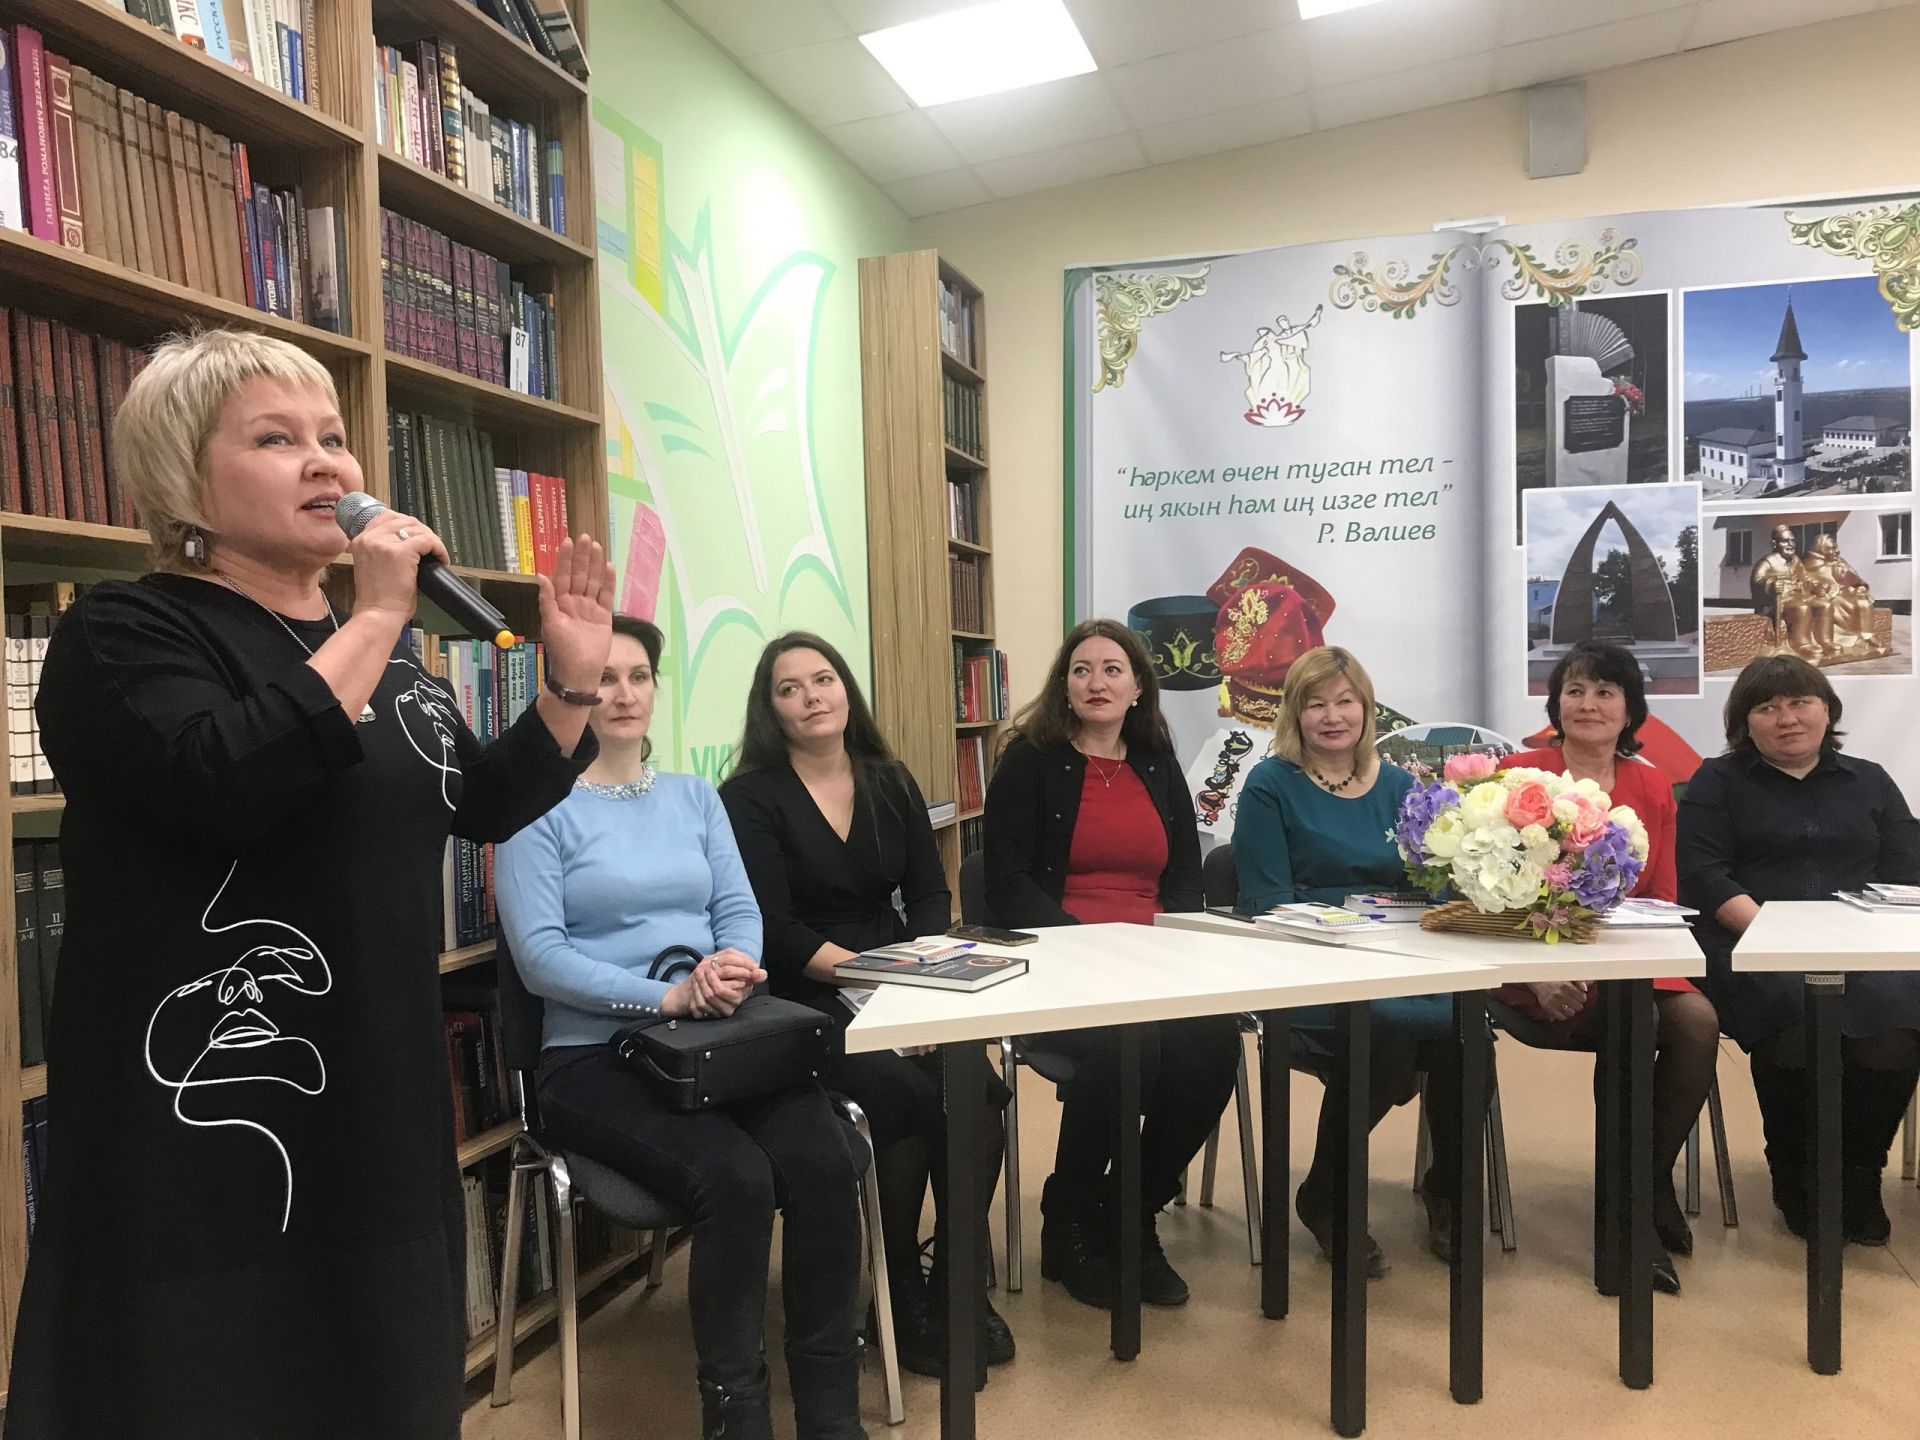 Людмила Симонова: «Живое слово журналиста вызывает больше доверия»